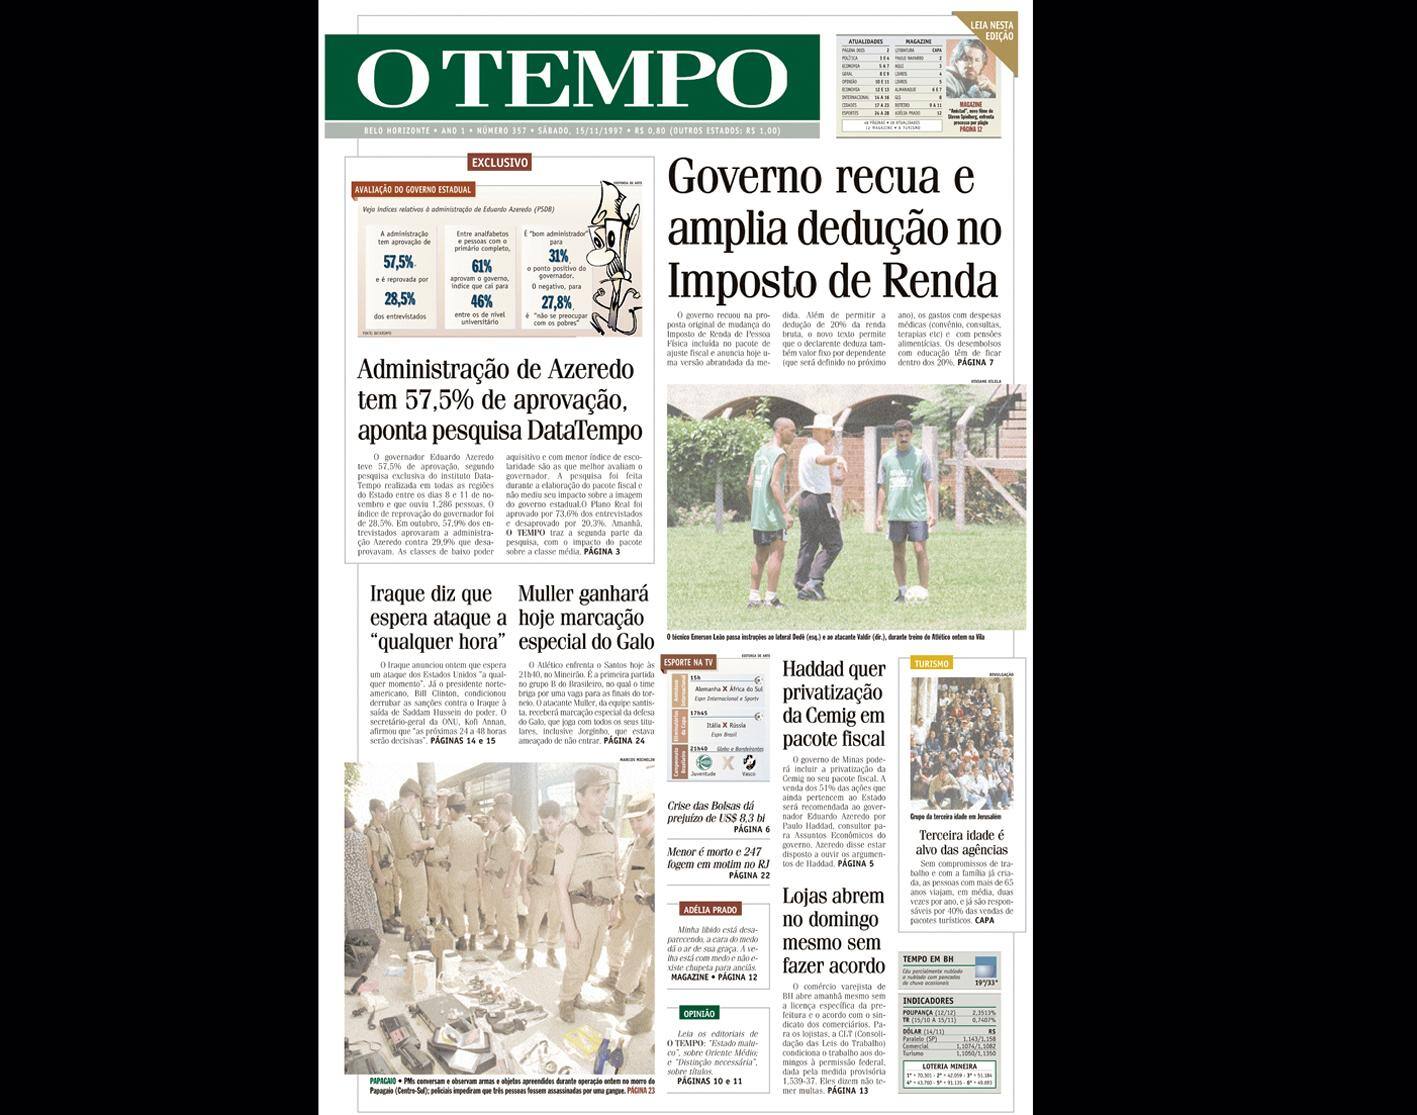 Capa do jornal O TEMPO no dia 15.11.1997; resgate do acervo marca as comemorações dos 25 anos da publicação